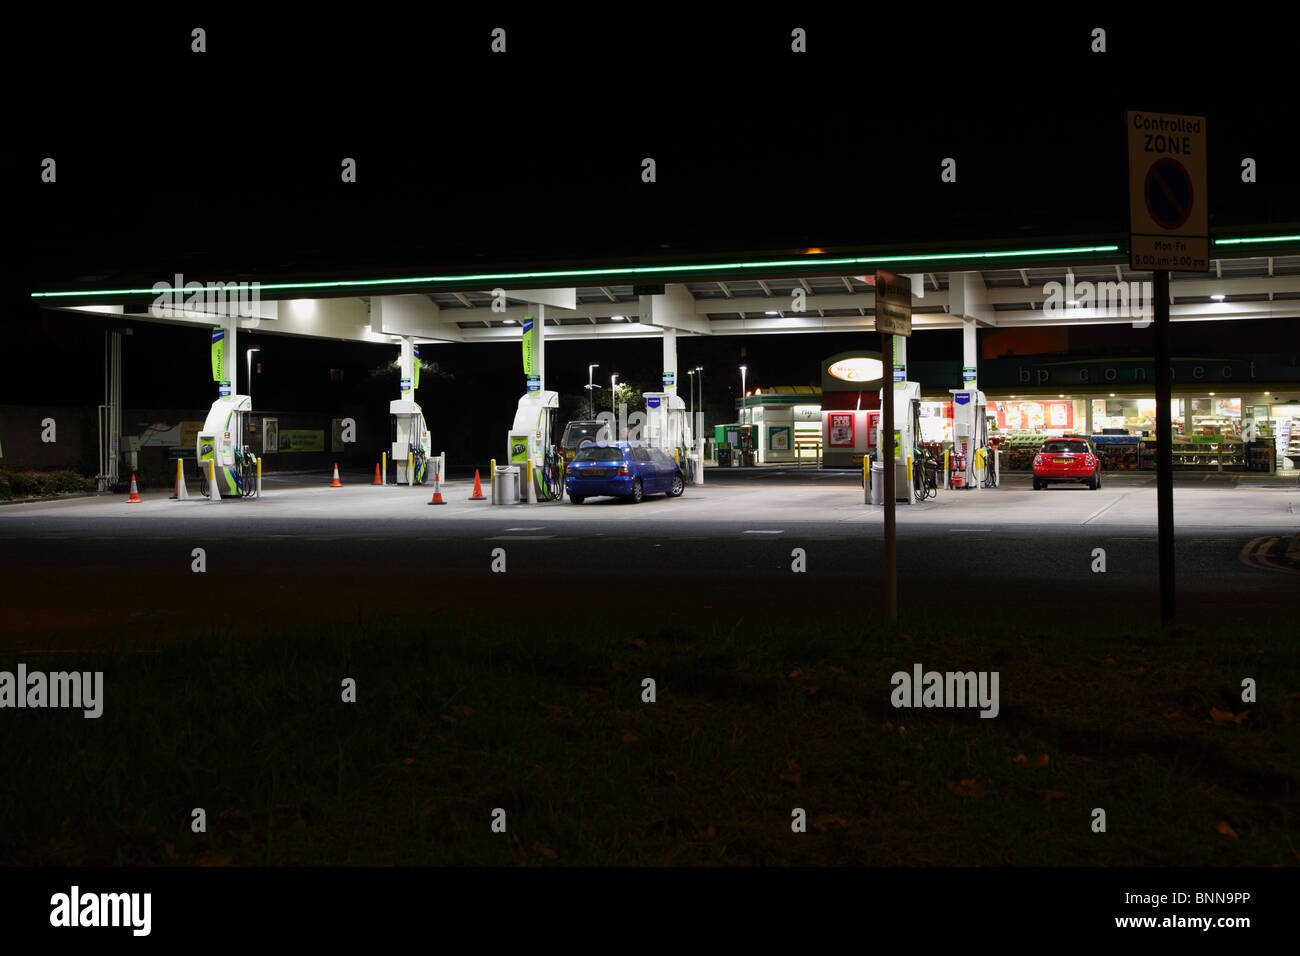 Vue de nuit en montrant la station essence BP à Hammersmith, Londres, W6. Banque D'Images